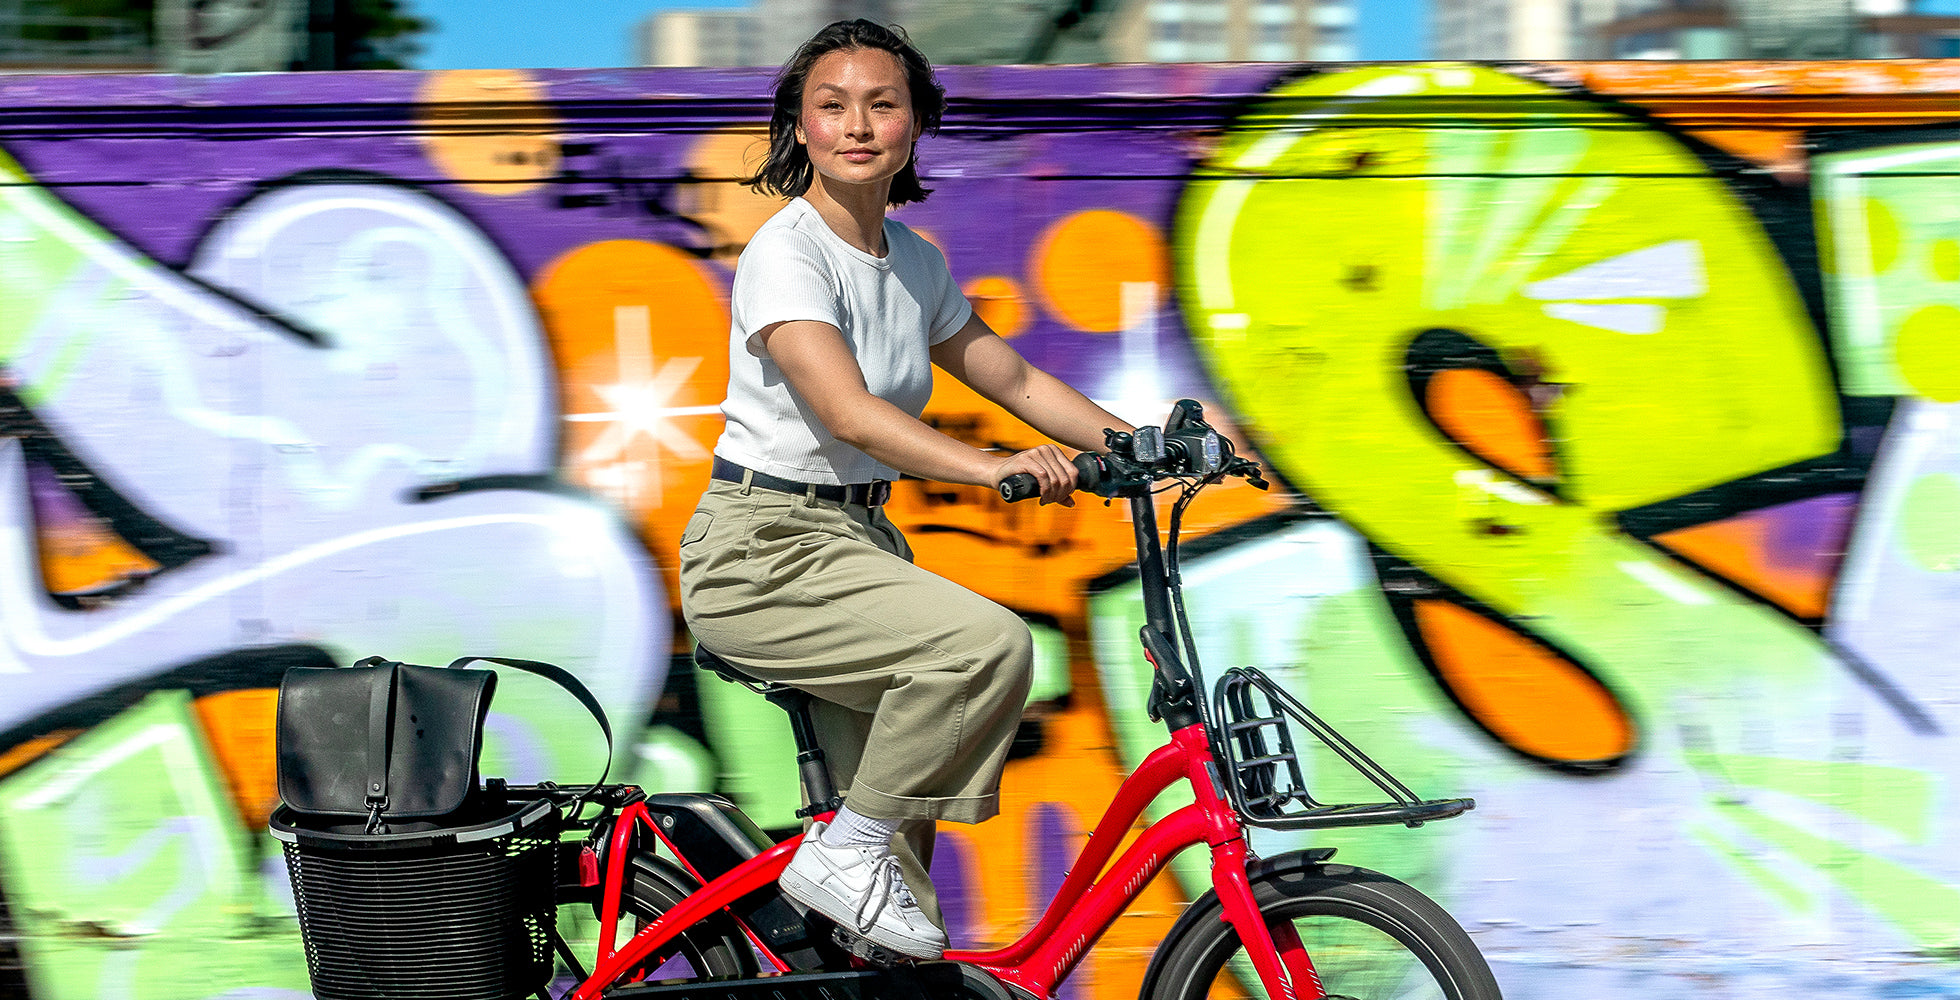 Woman riding Tern NBD e-bike